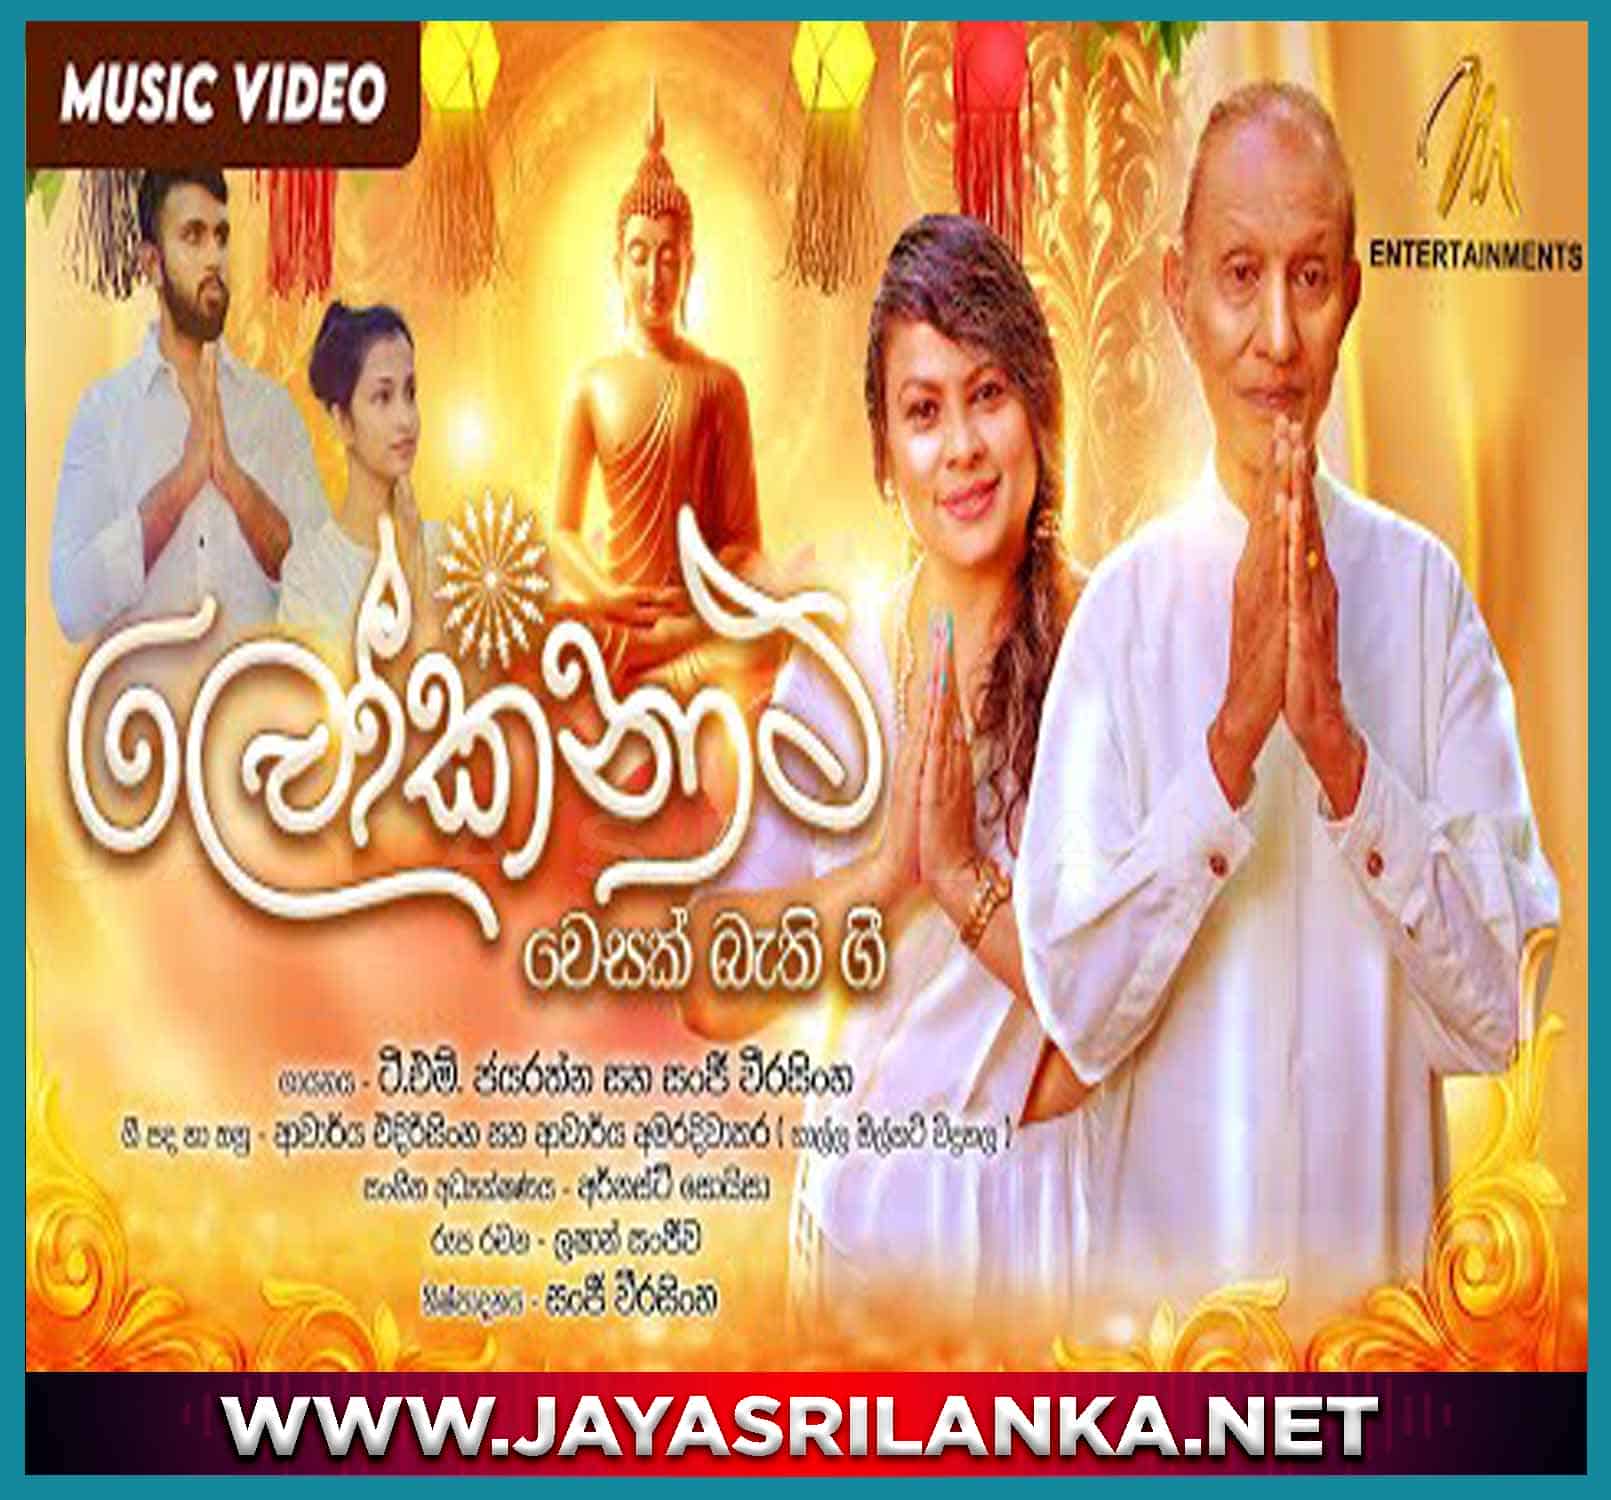 jayasrilanka ~ Lokanatha - T M Jayarathna & Sanji Weerasinghe